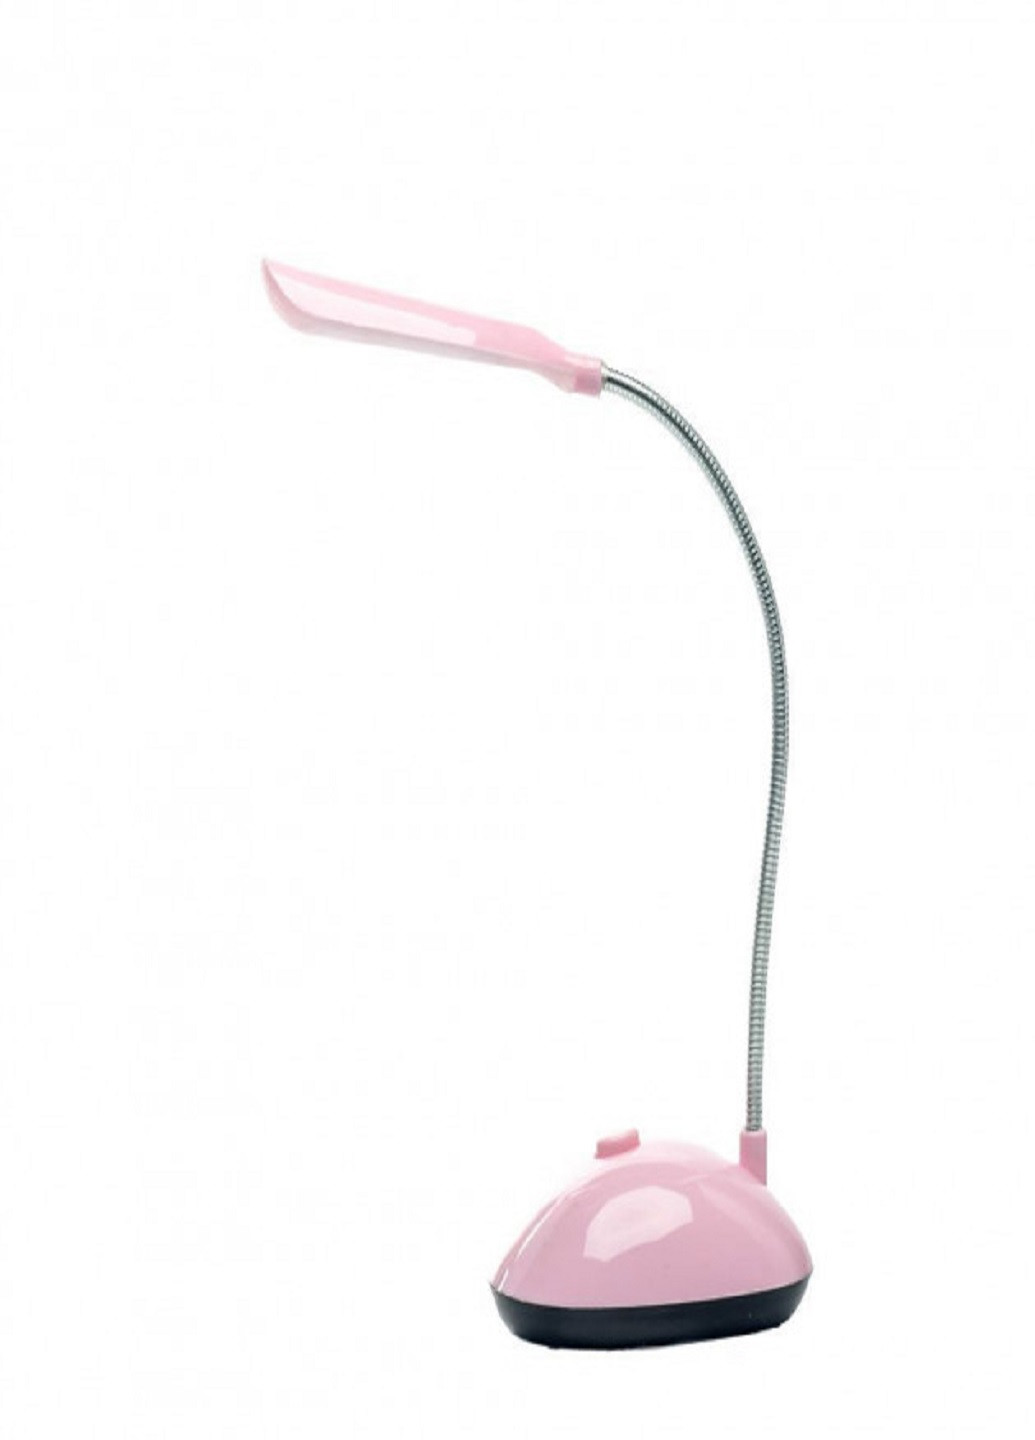 Настольная лампа BL-7188 светильник LED Розовая VTech (253319229)